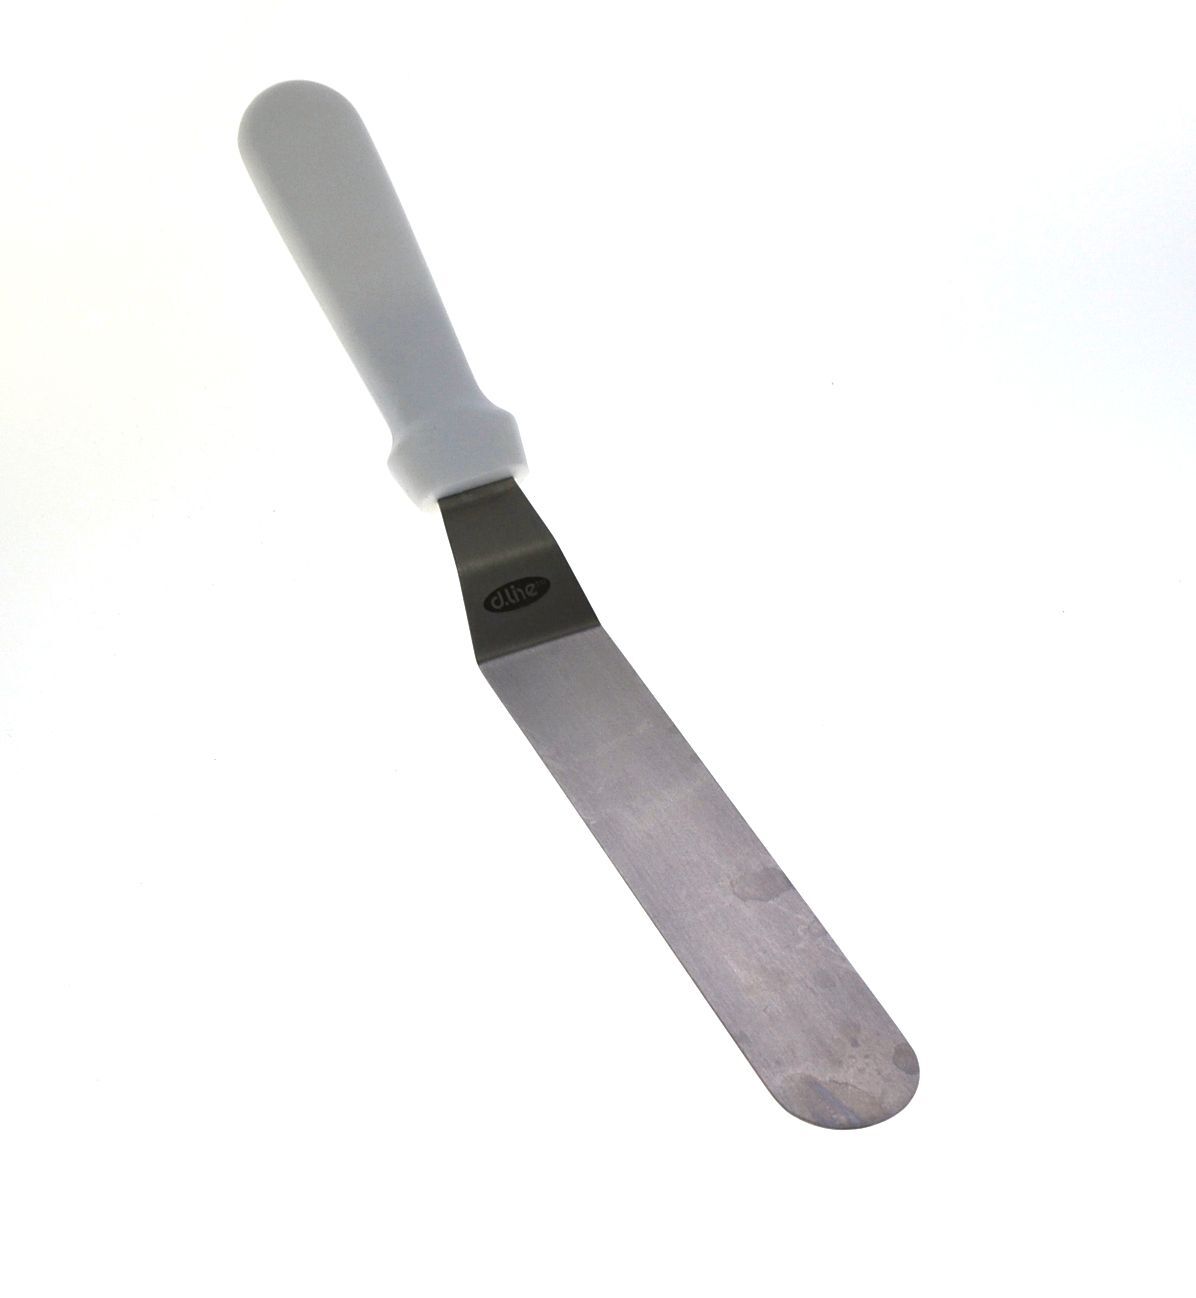 D.Line 20cm Offset Palette Knife